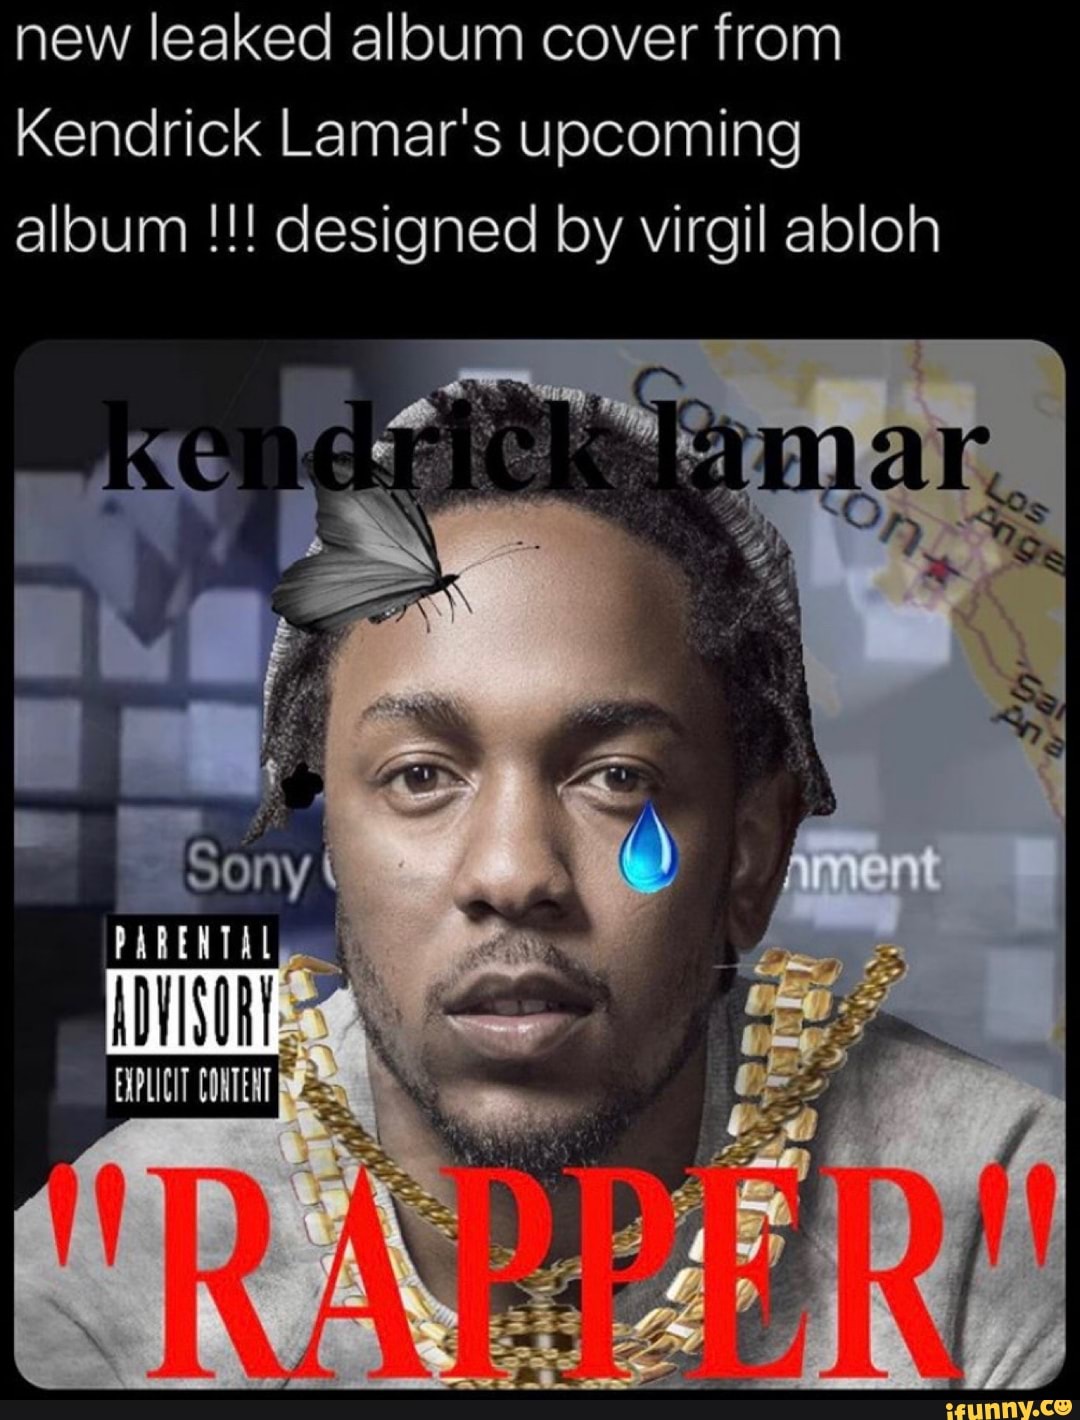 kendrick lamar albums reddit